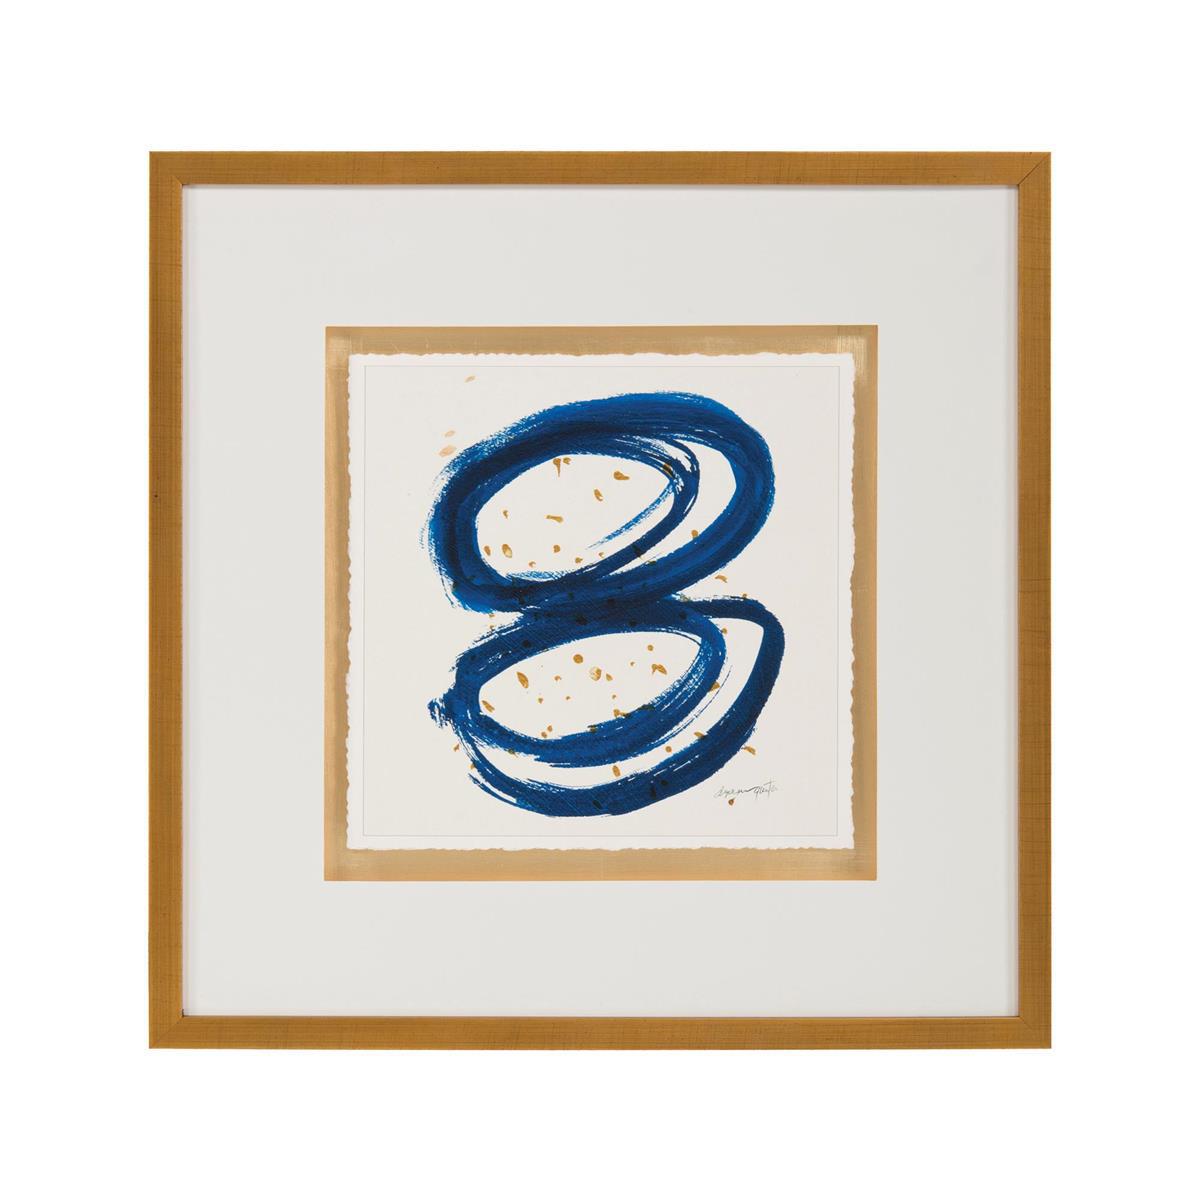 Dyann Gunter's Blue And Gold-John Richard-Art-Artistic Elements